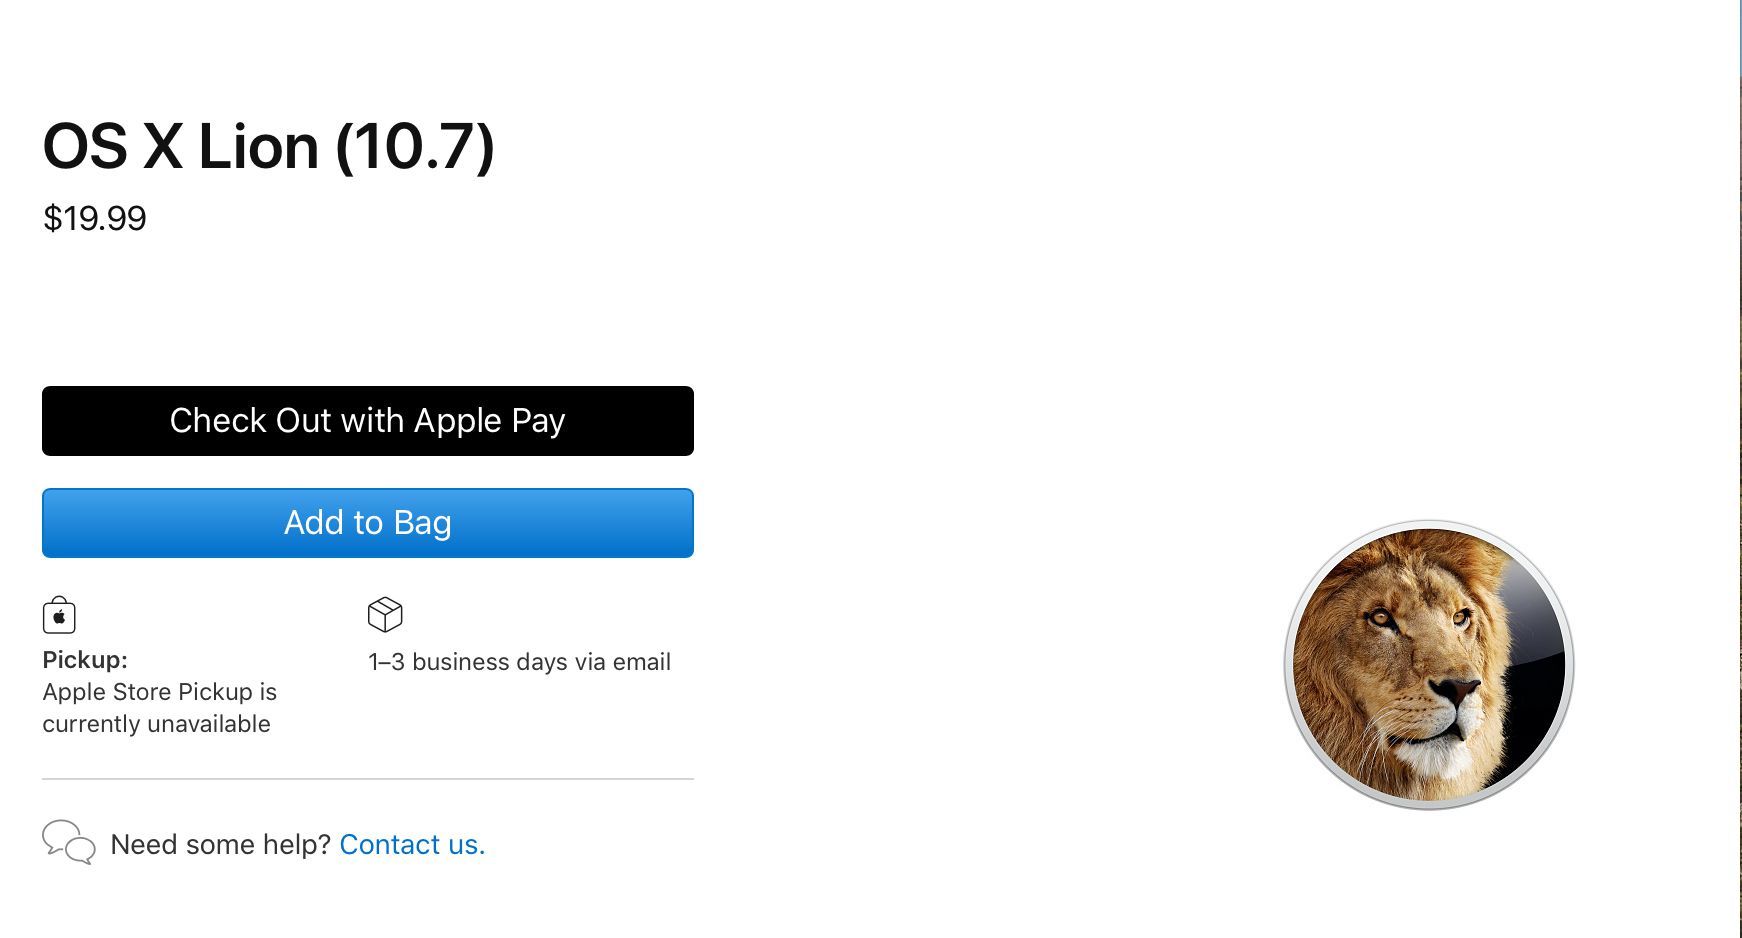 OS X Lion downloadscherm op Apple.com